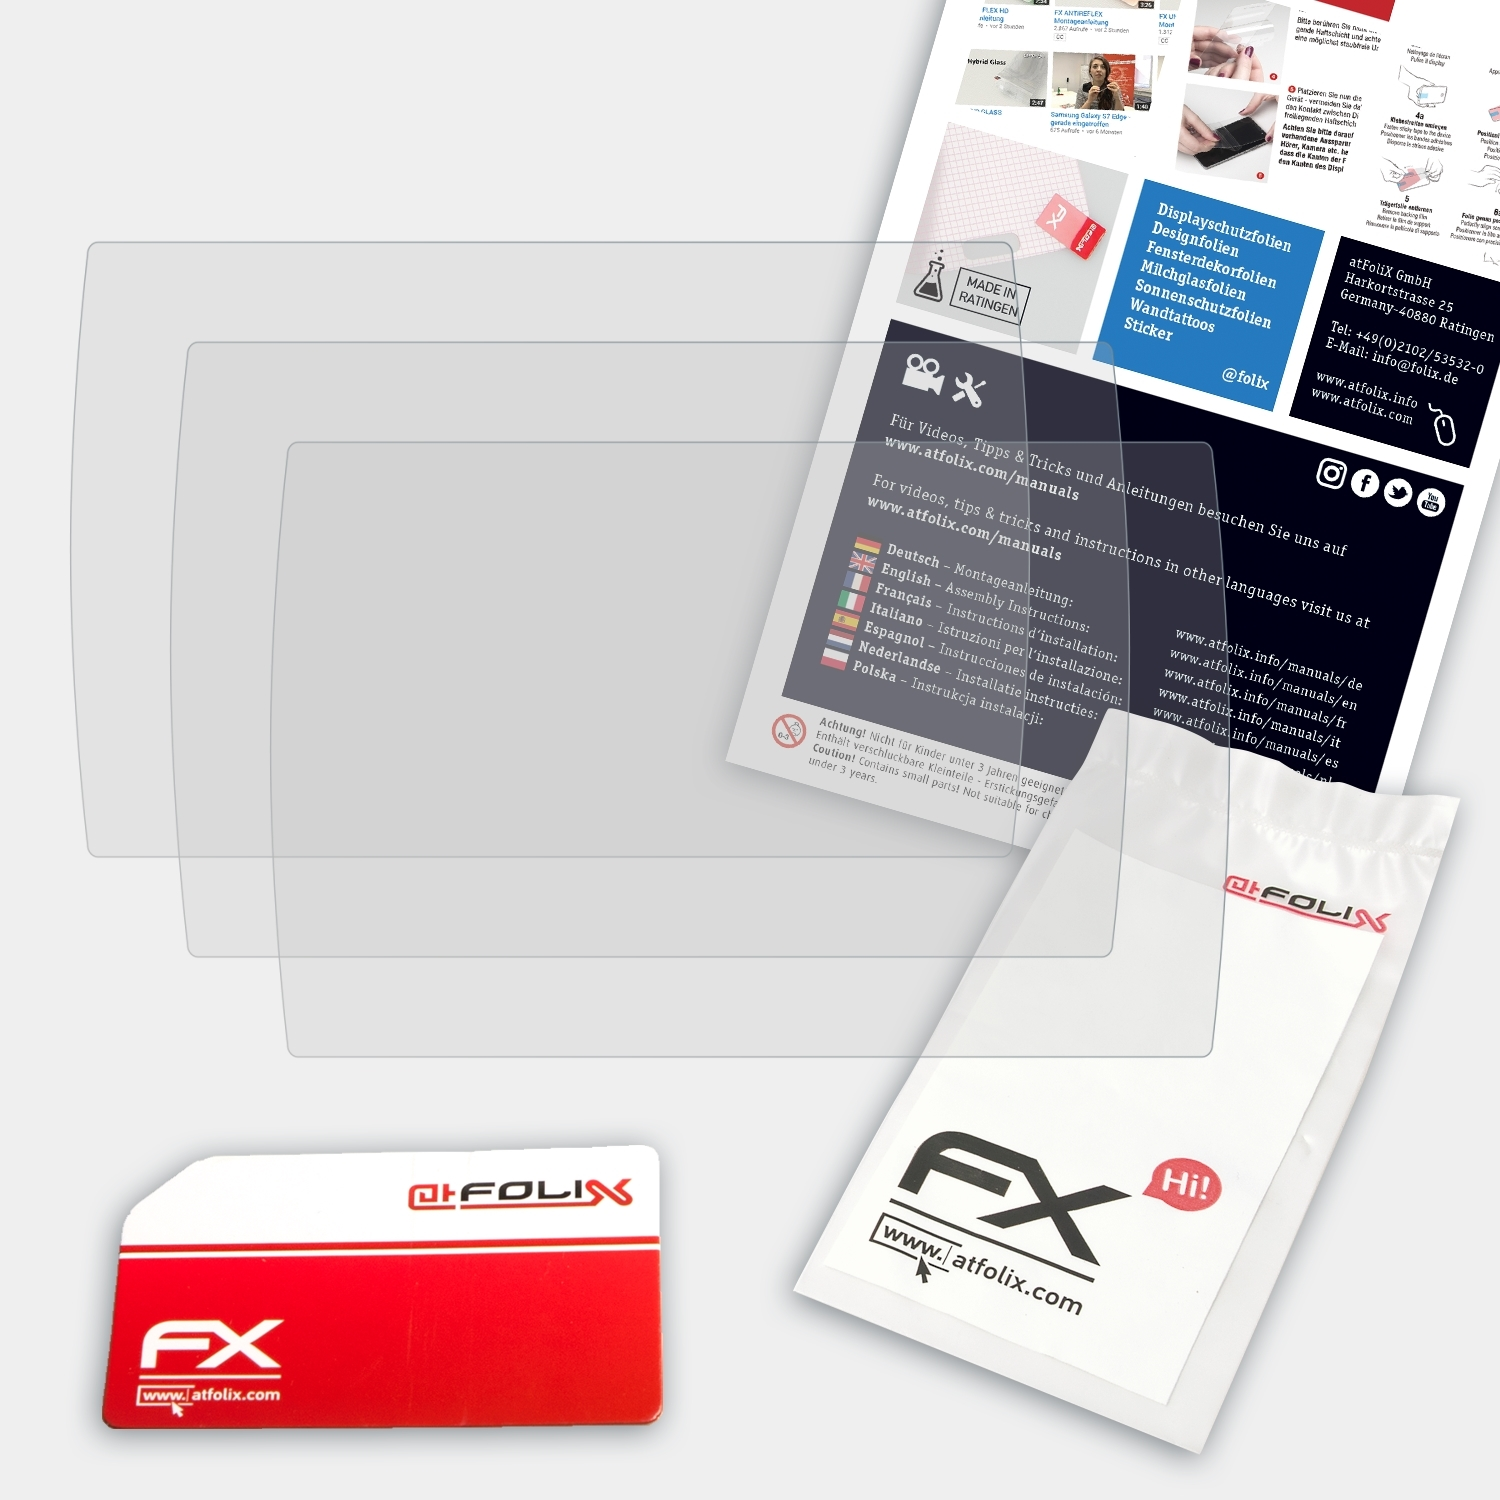 ATFOLIX 3x FX-Antireflex 70s/70dv) Garmin Displayschutz(für echoMAP